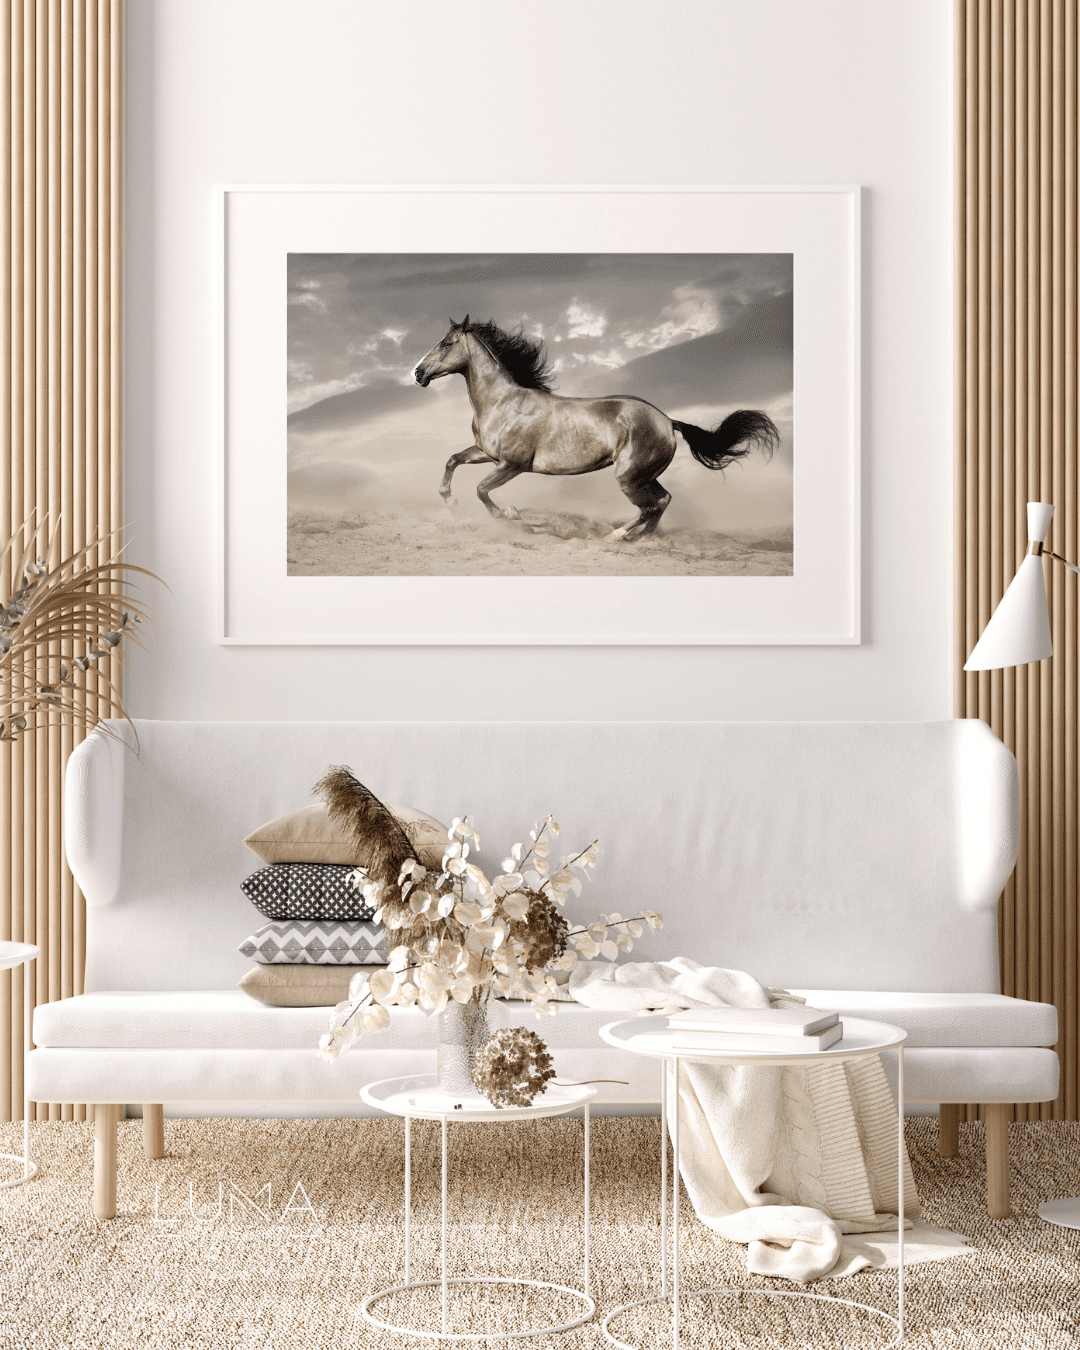 The Desert Stallion Animal Artwork